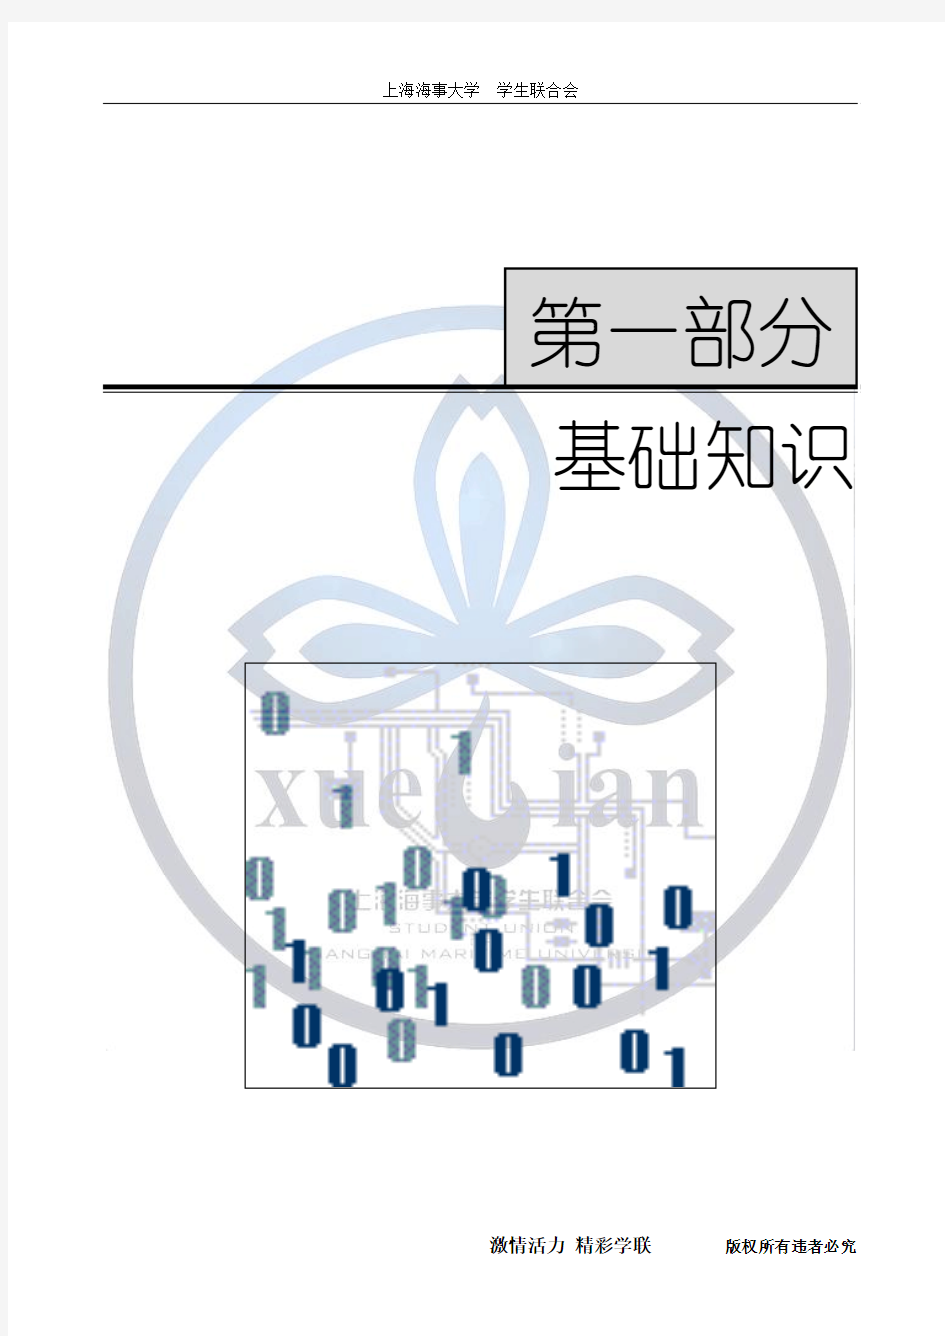 上海计算机一级考试基础知识